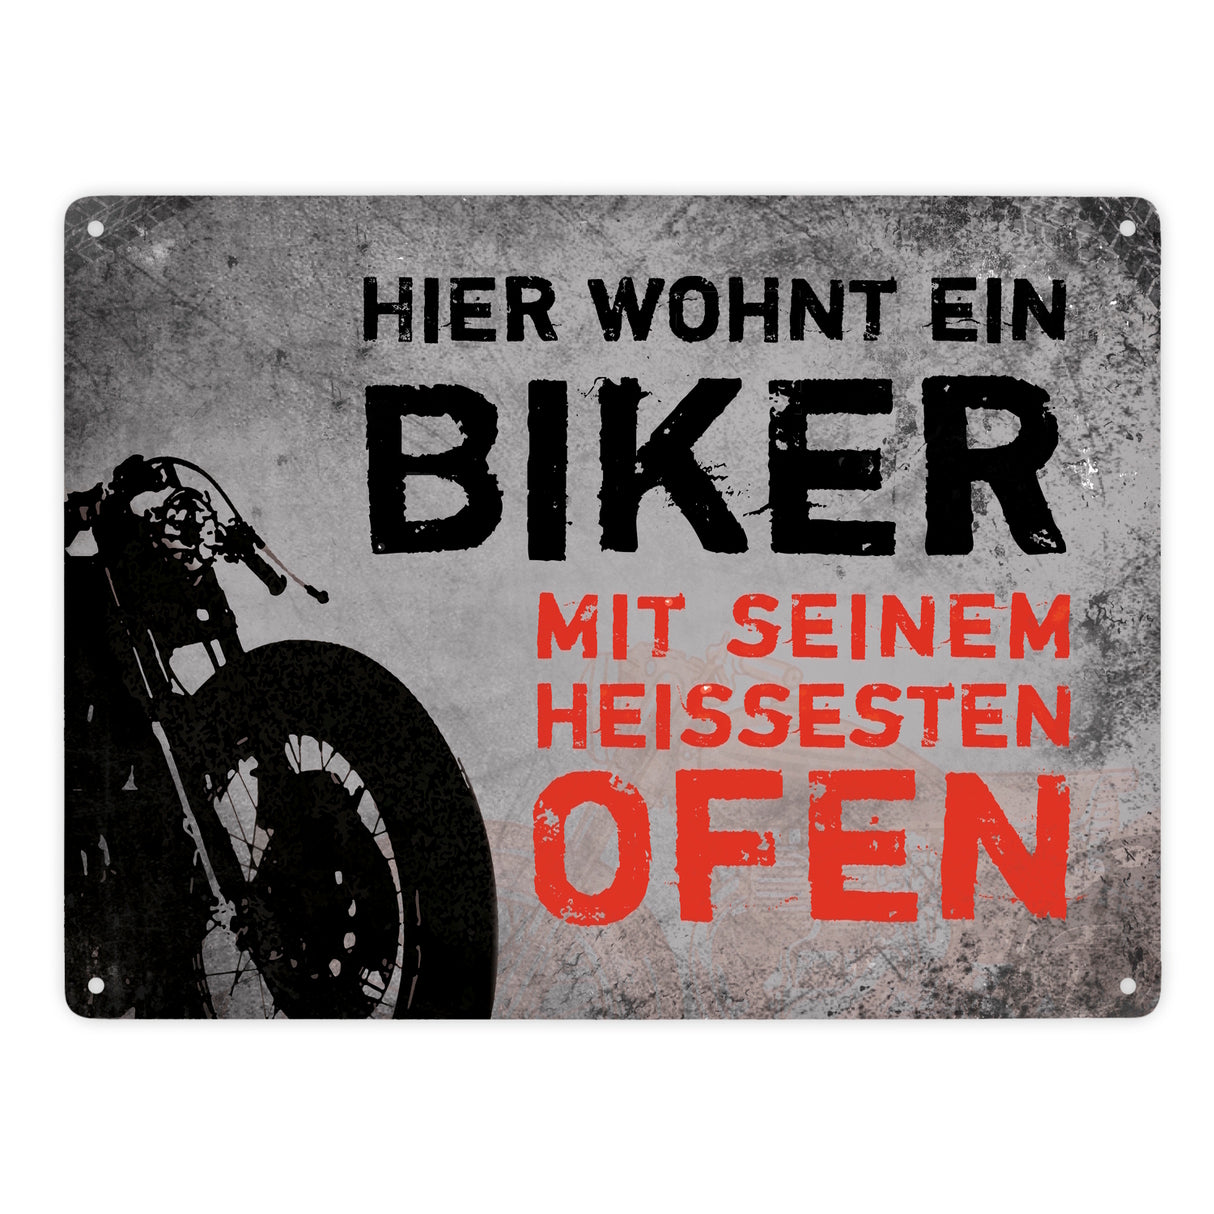 Metallschild mit Motorrad Motiv und Spruch: Hier wohnt ein Biker mit seinem ...